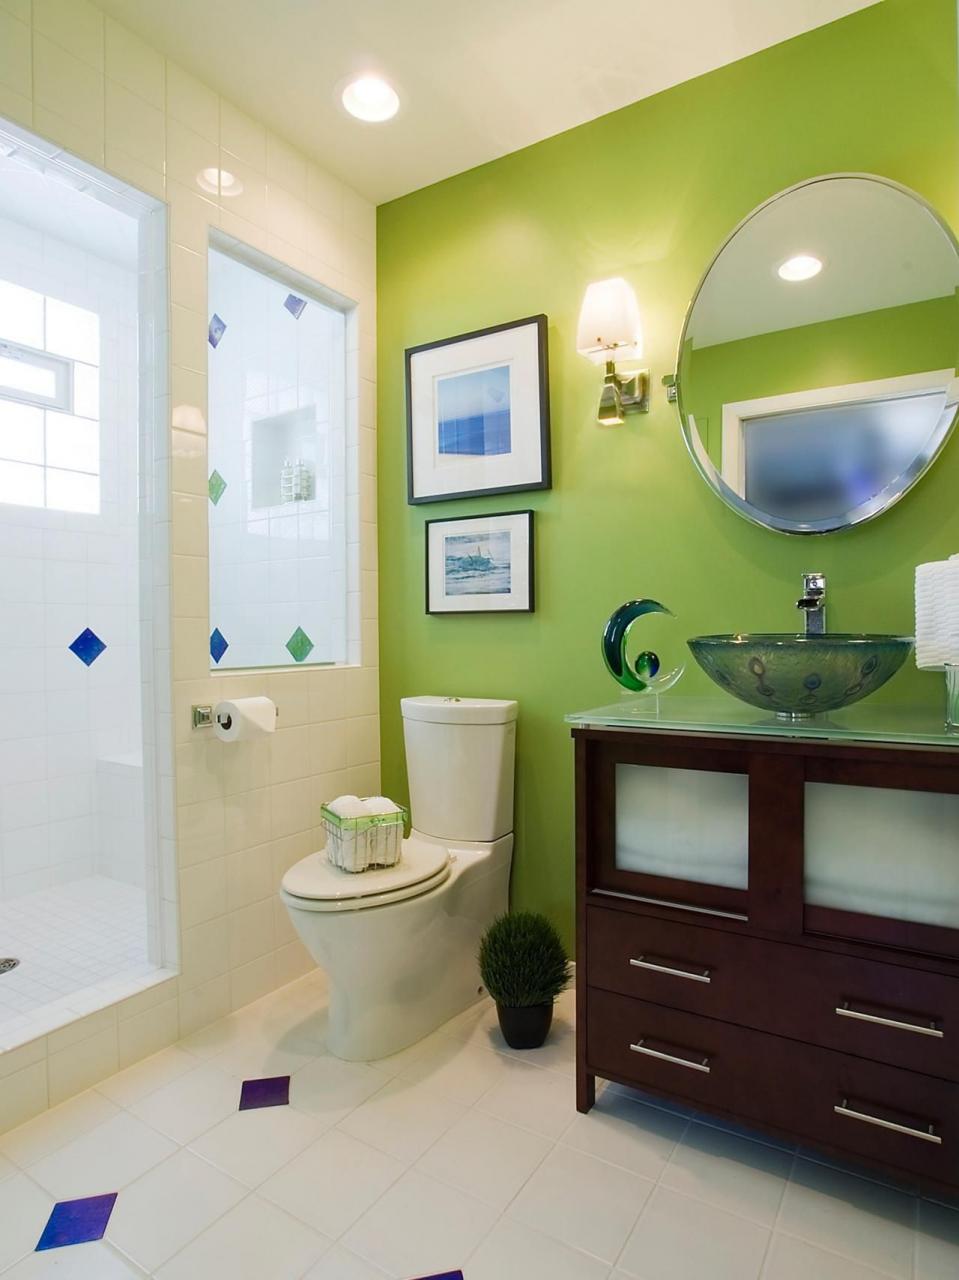 Lime Green Bathroom Decor 2020 Green bathroom decor, Green bathroom